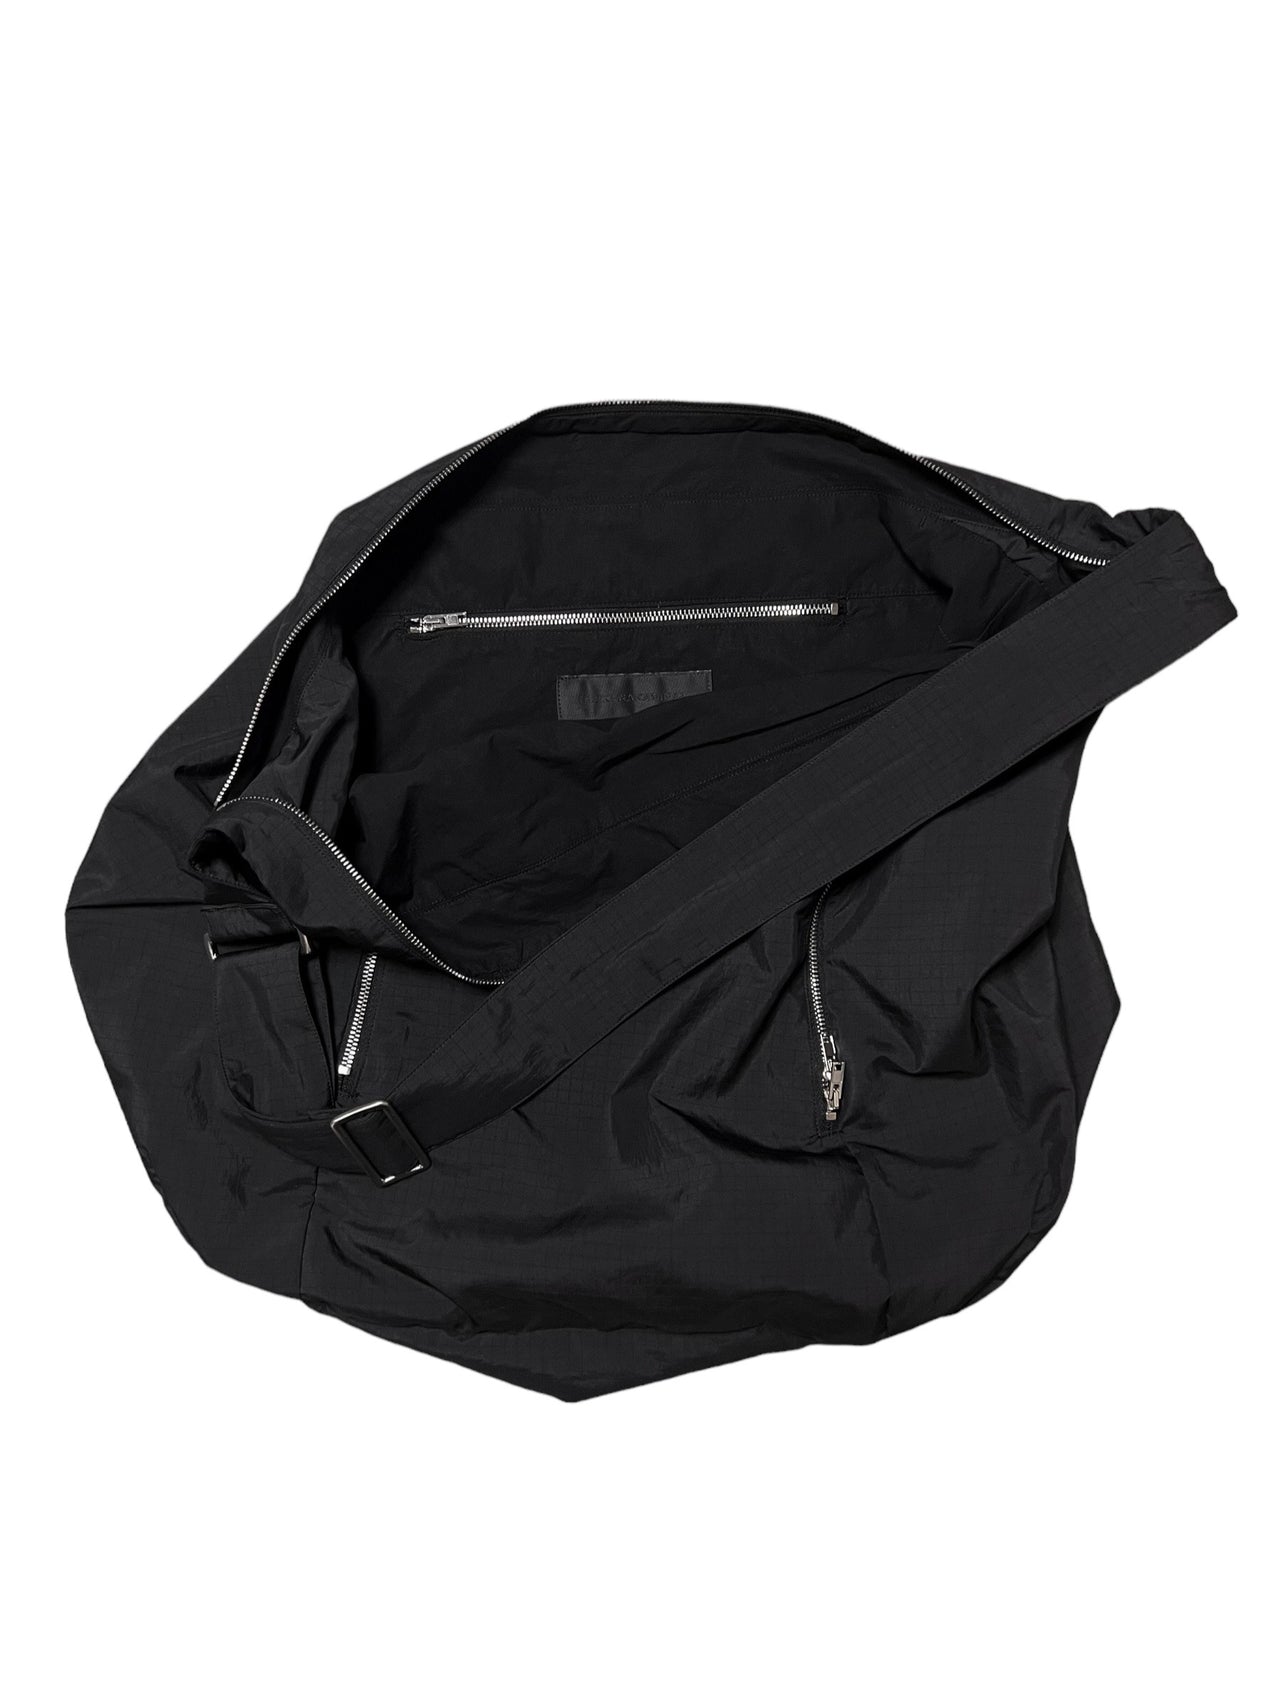 ARC TECHNICAL SHOULDER BAG in BLACK